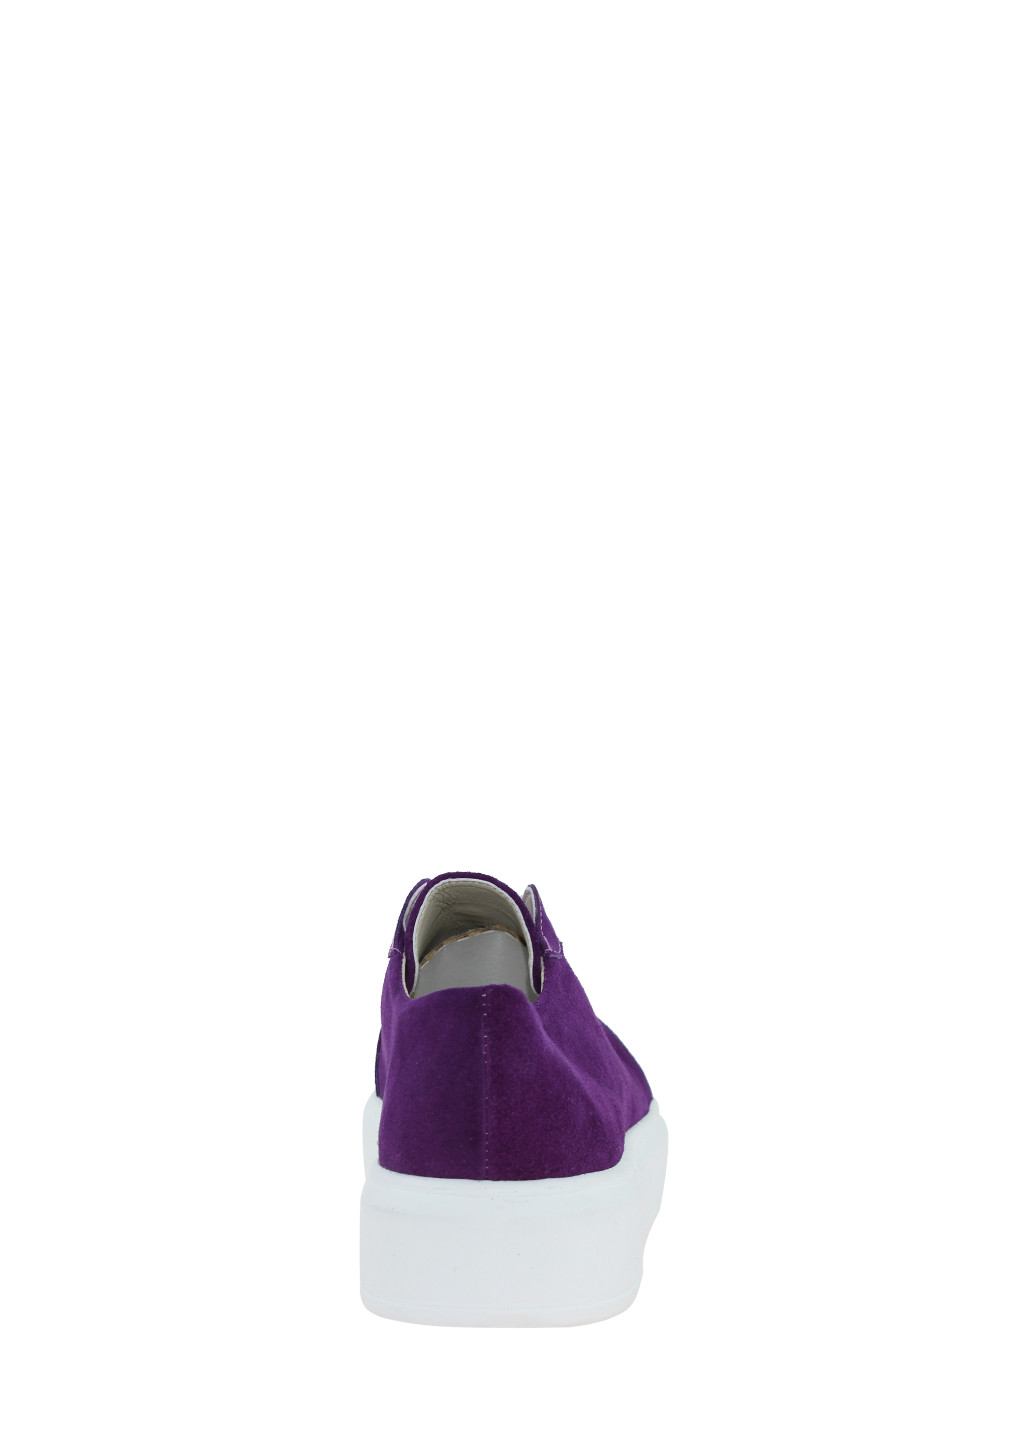 Фиолетовые кеды re3305-11 фиолетовый Emilio